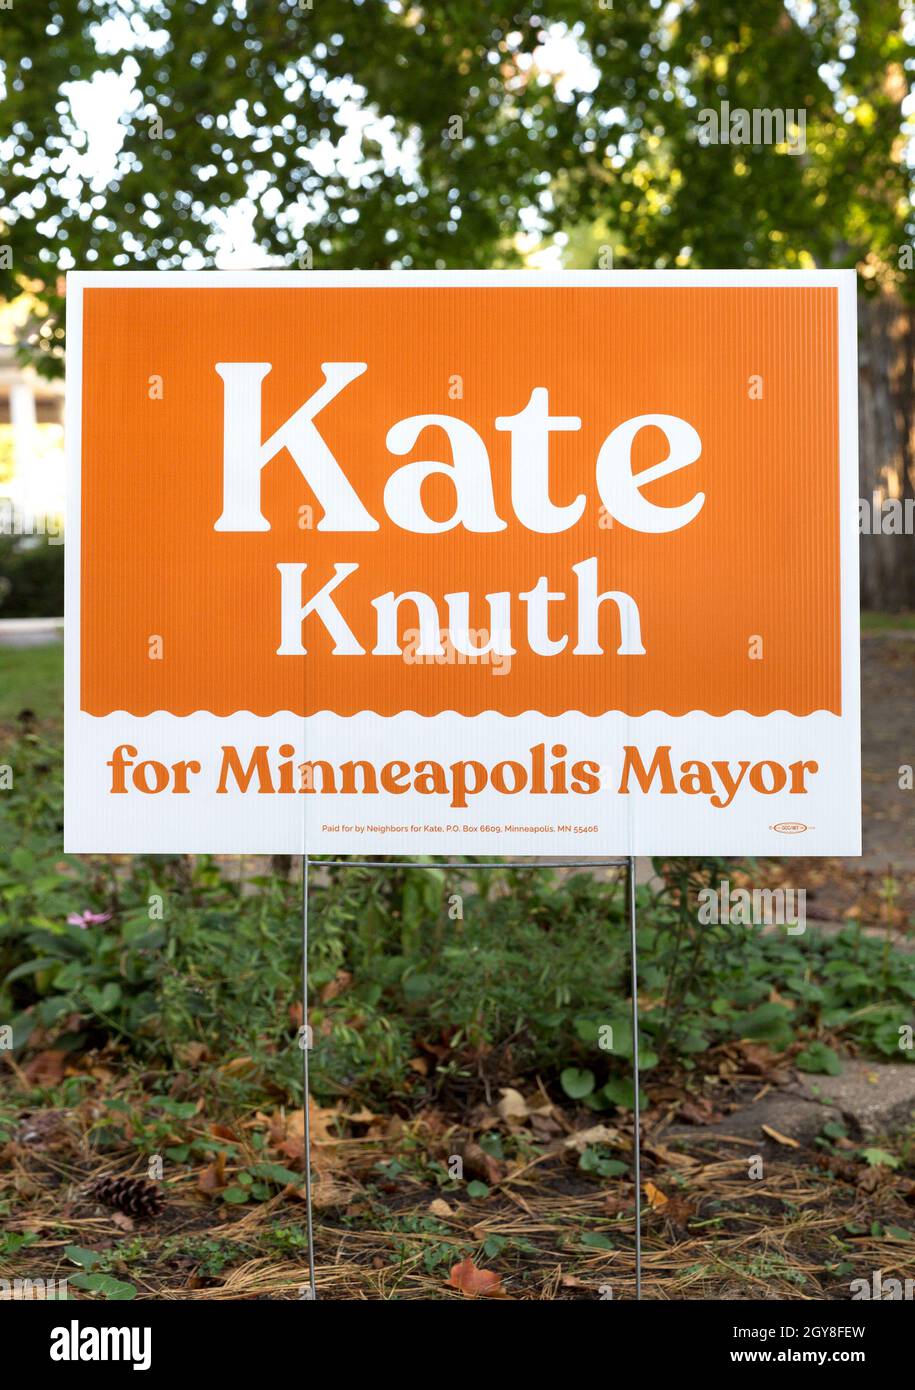 Un cartello politico di quartiere con colori arancio e bianco che approva l'elezione del democratico Kate Knuth per il sindaco di Minneapolis, Minnesota Foto Stock